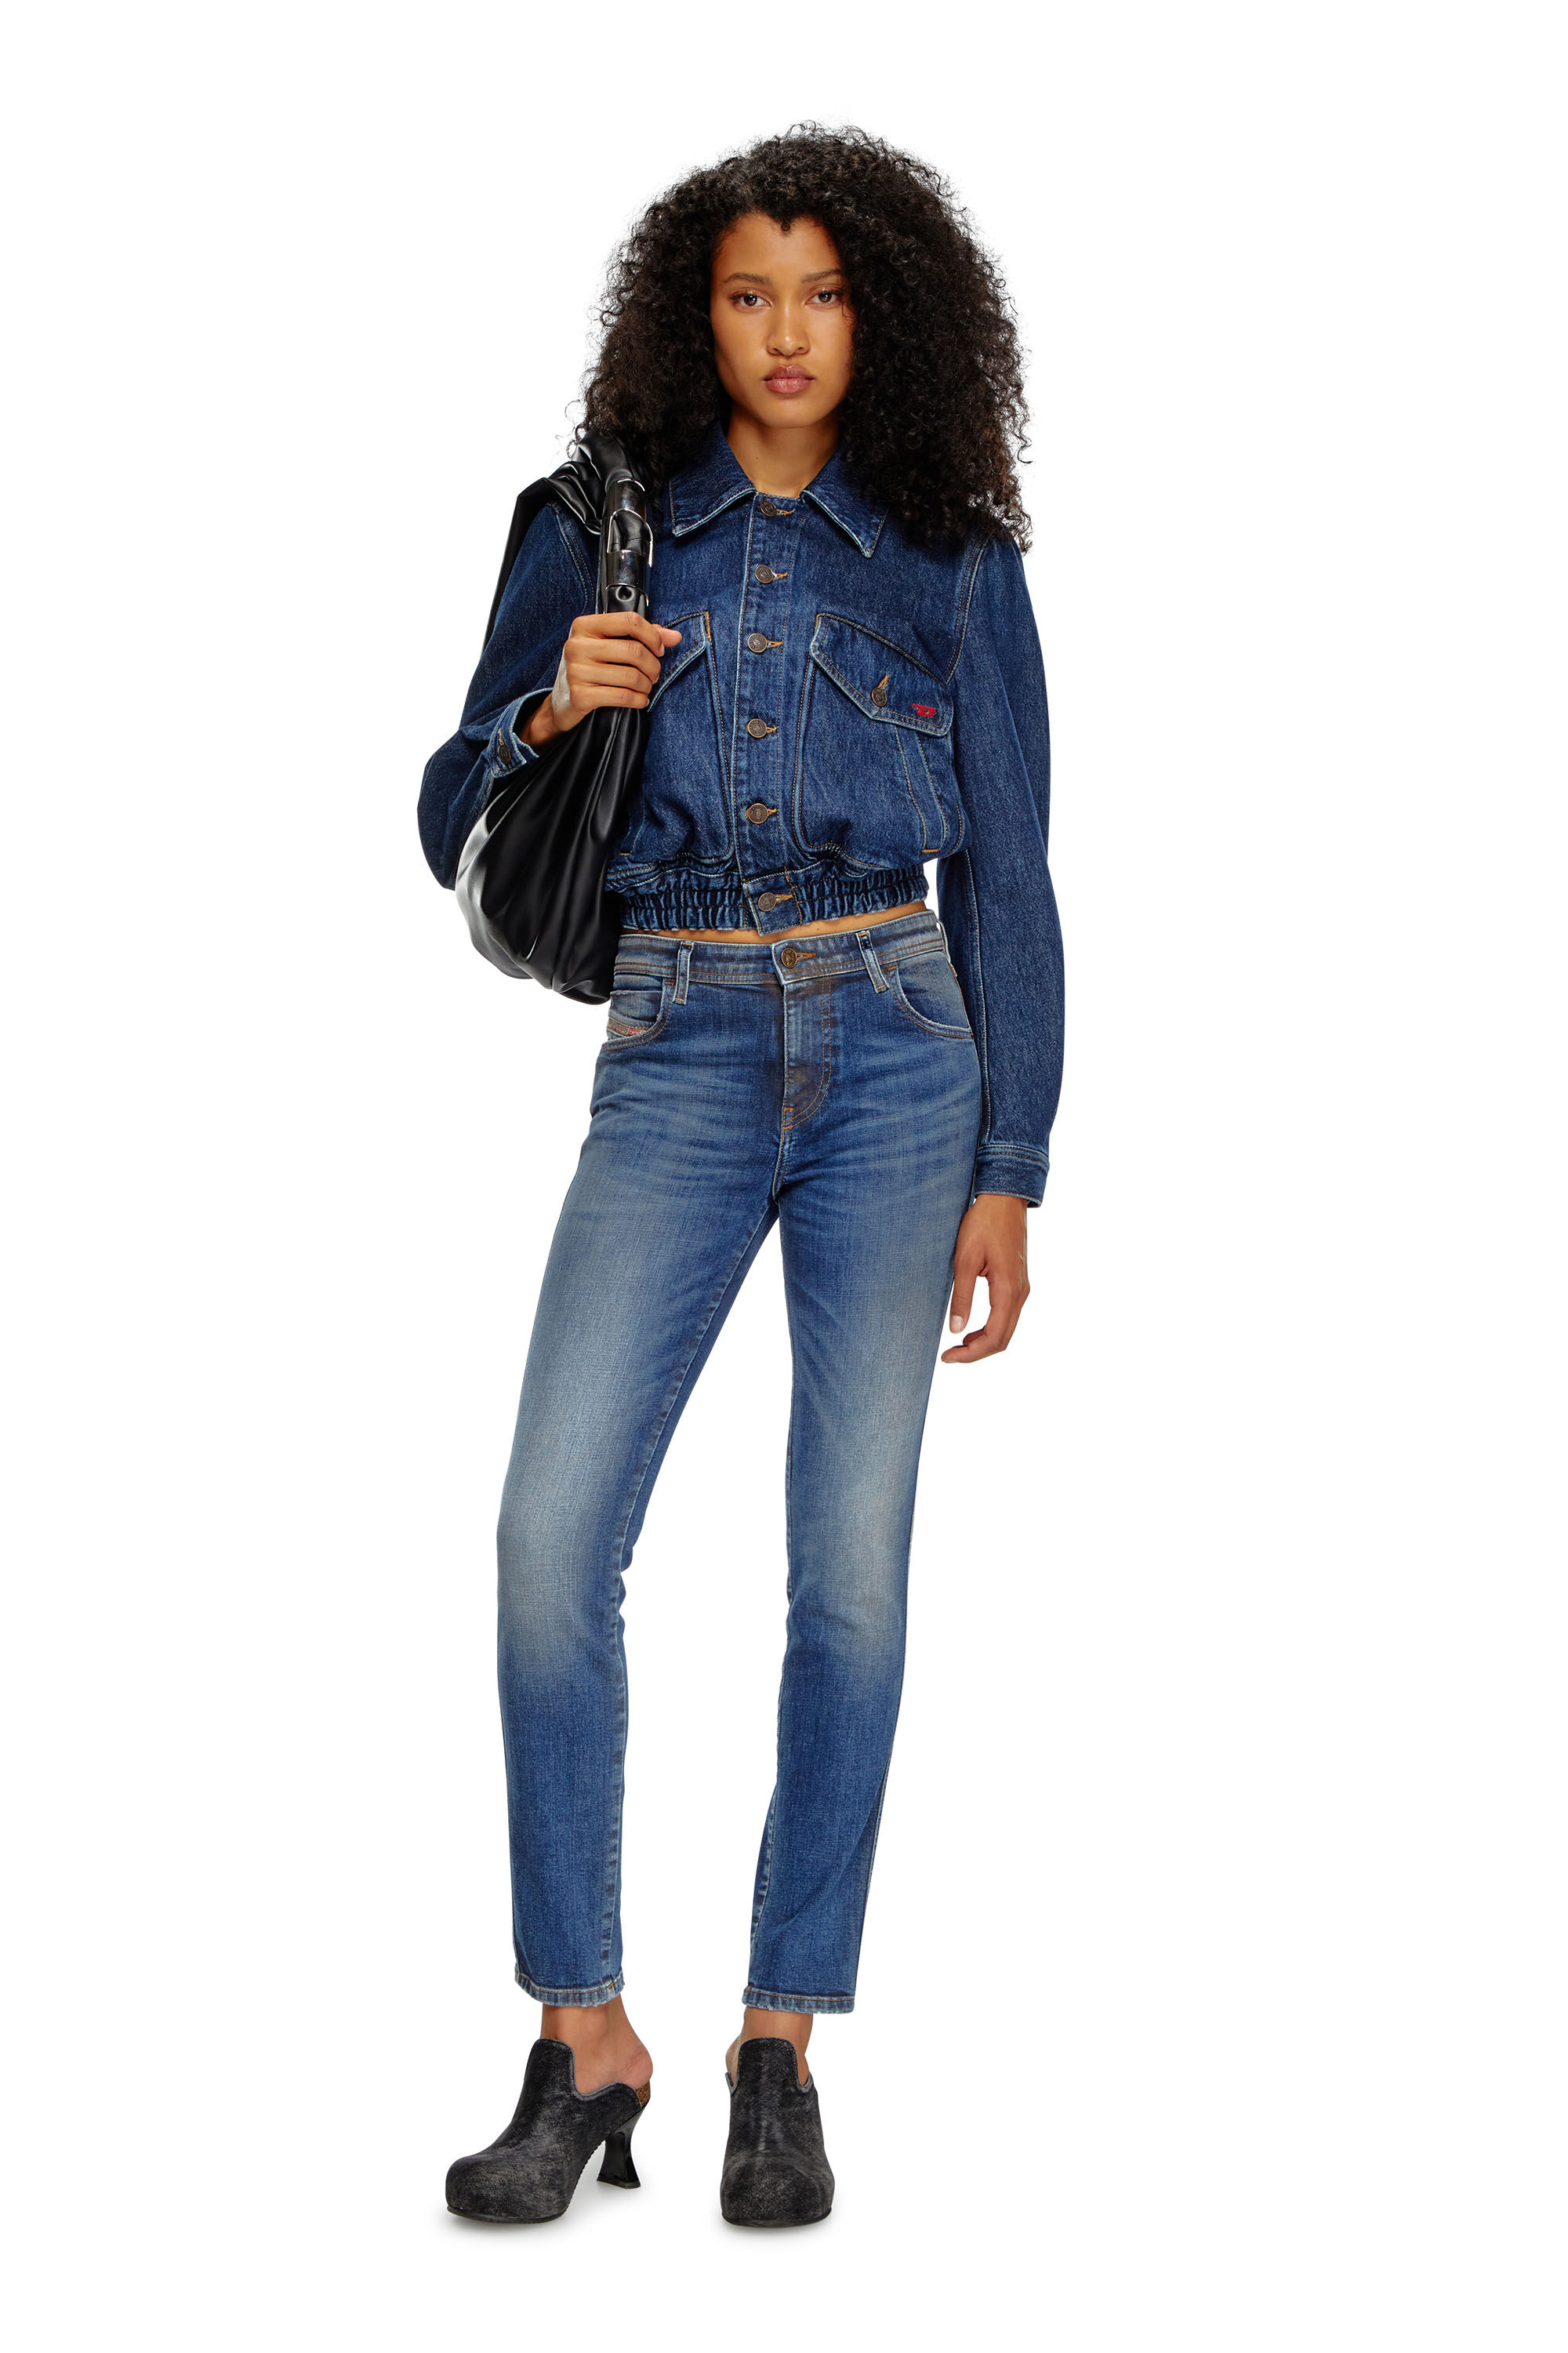 Diesel - Skinny Jeans 2015 Babhila 09J32, Mujer Skinny Jeans - 2015 Babhila in Azul marino - Image 1